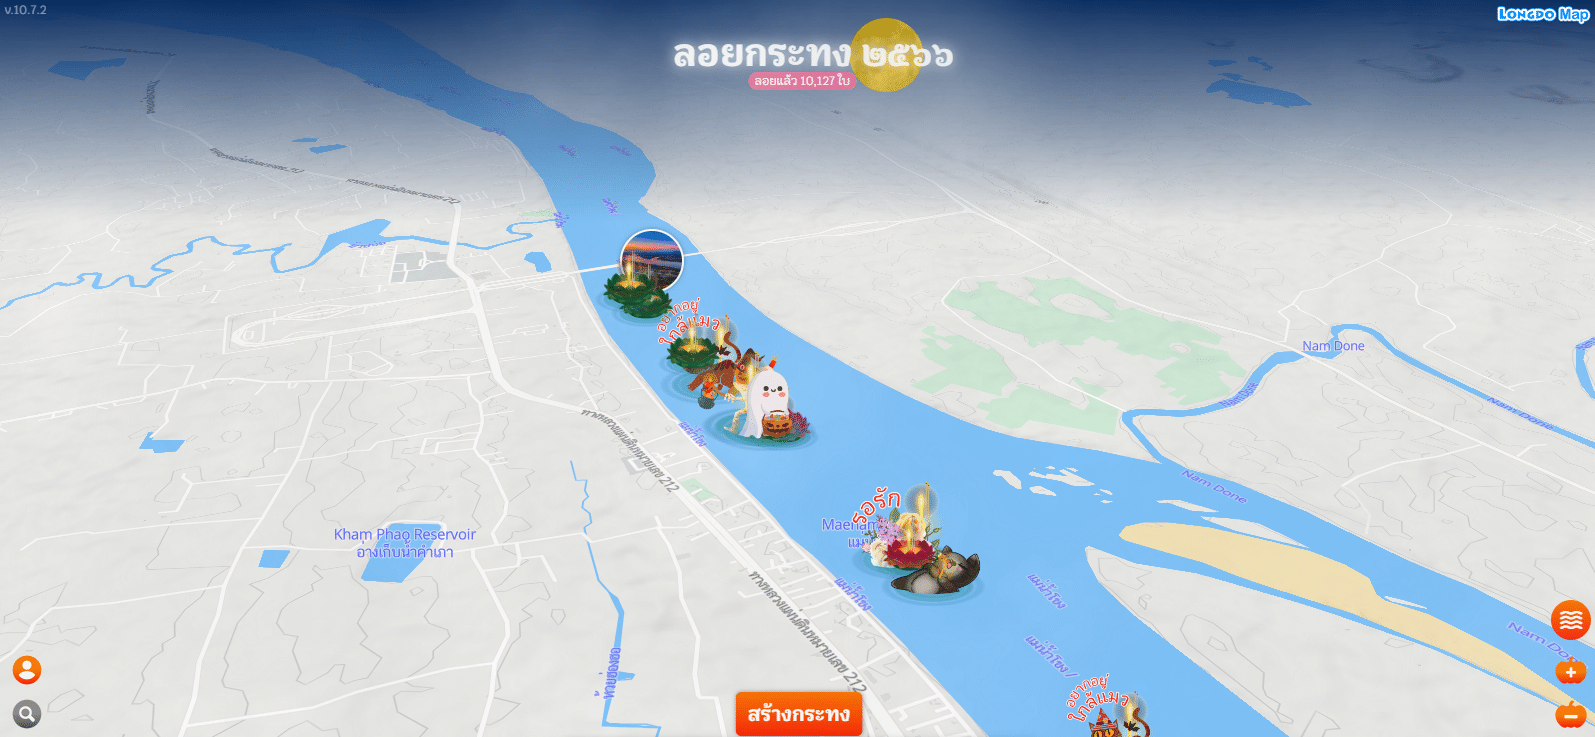 ร่วมลอยกระทงออนไลน์ 2566 กับ Map Longdo เว็บไซต์สุดเจ๋งที่ยกแม่น้ำทุกสายทั่วไทยมาให้คุณ